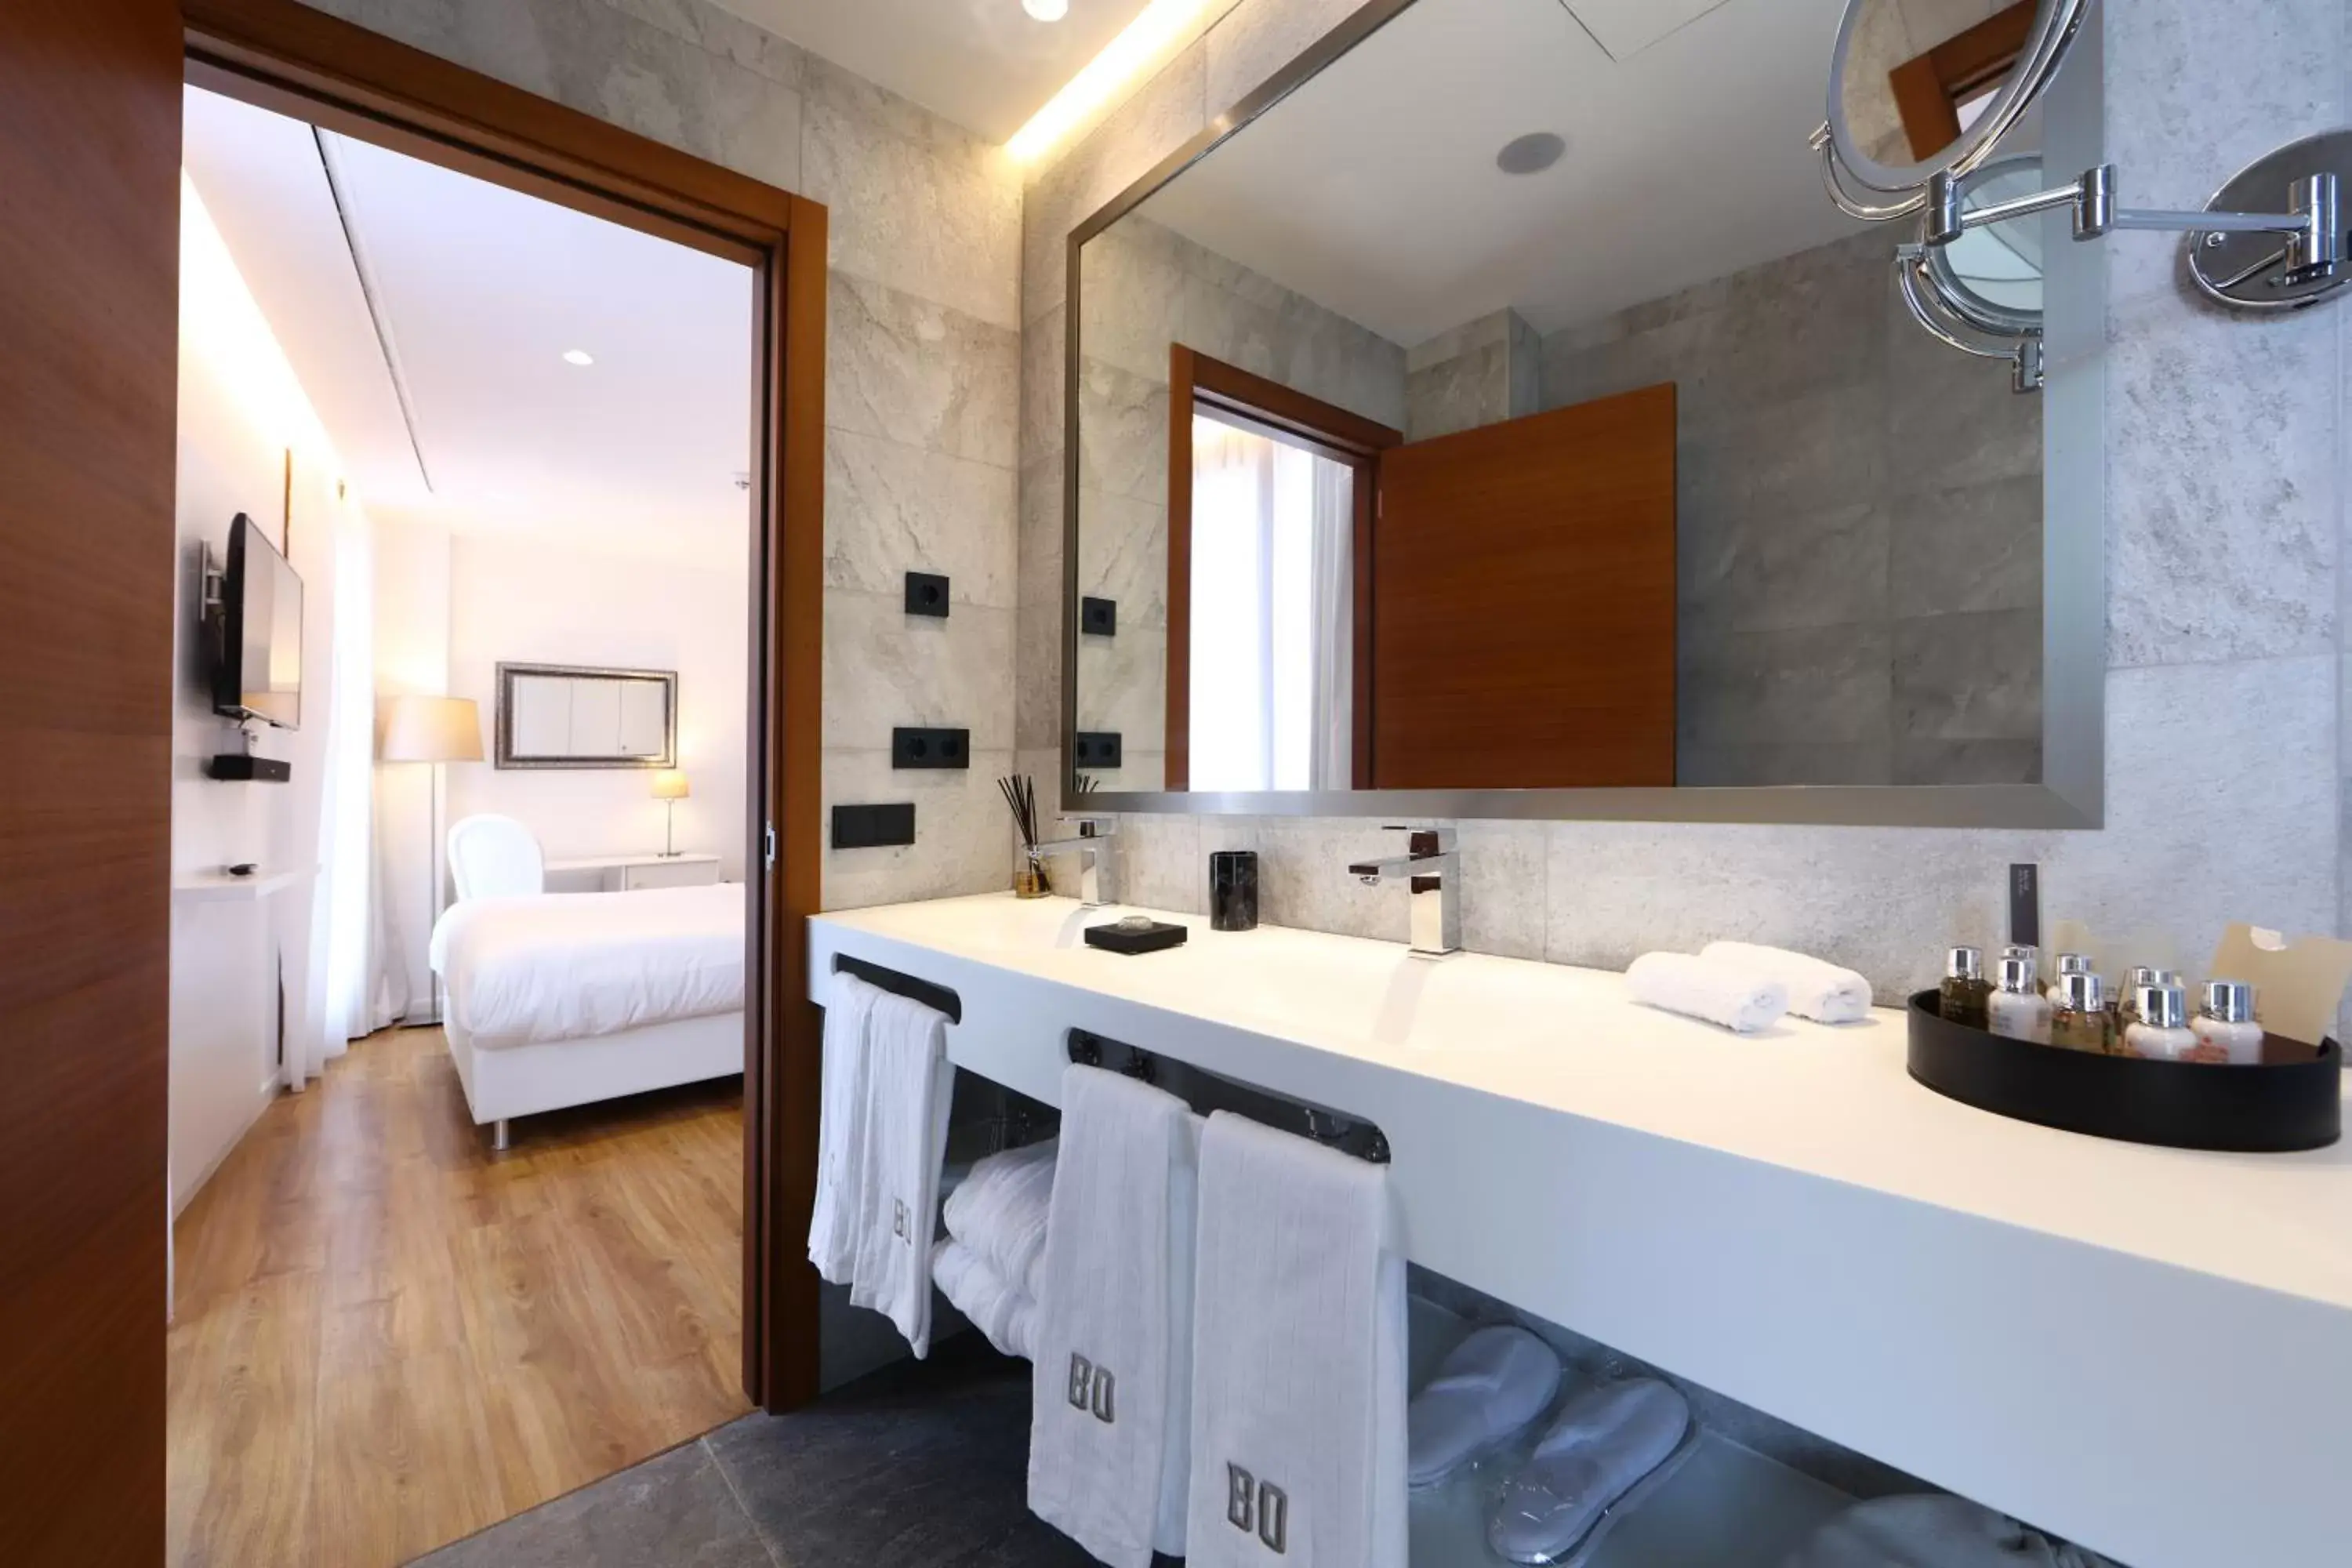 Bathroom in BO Hotel Palma